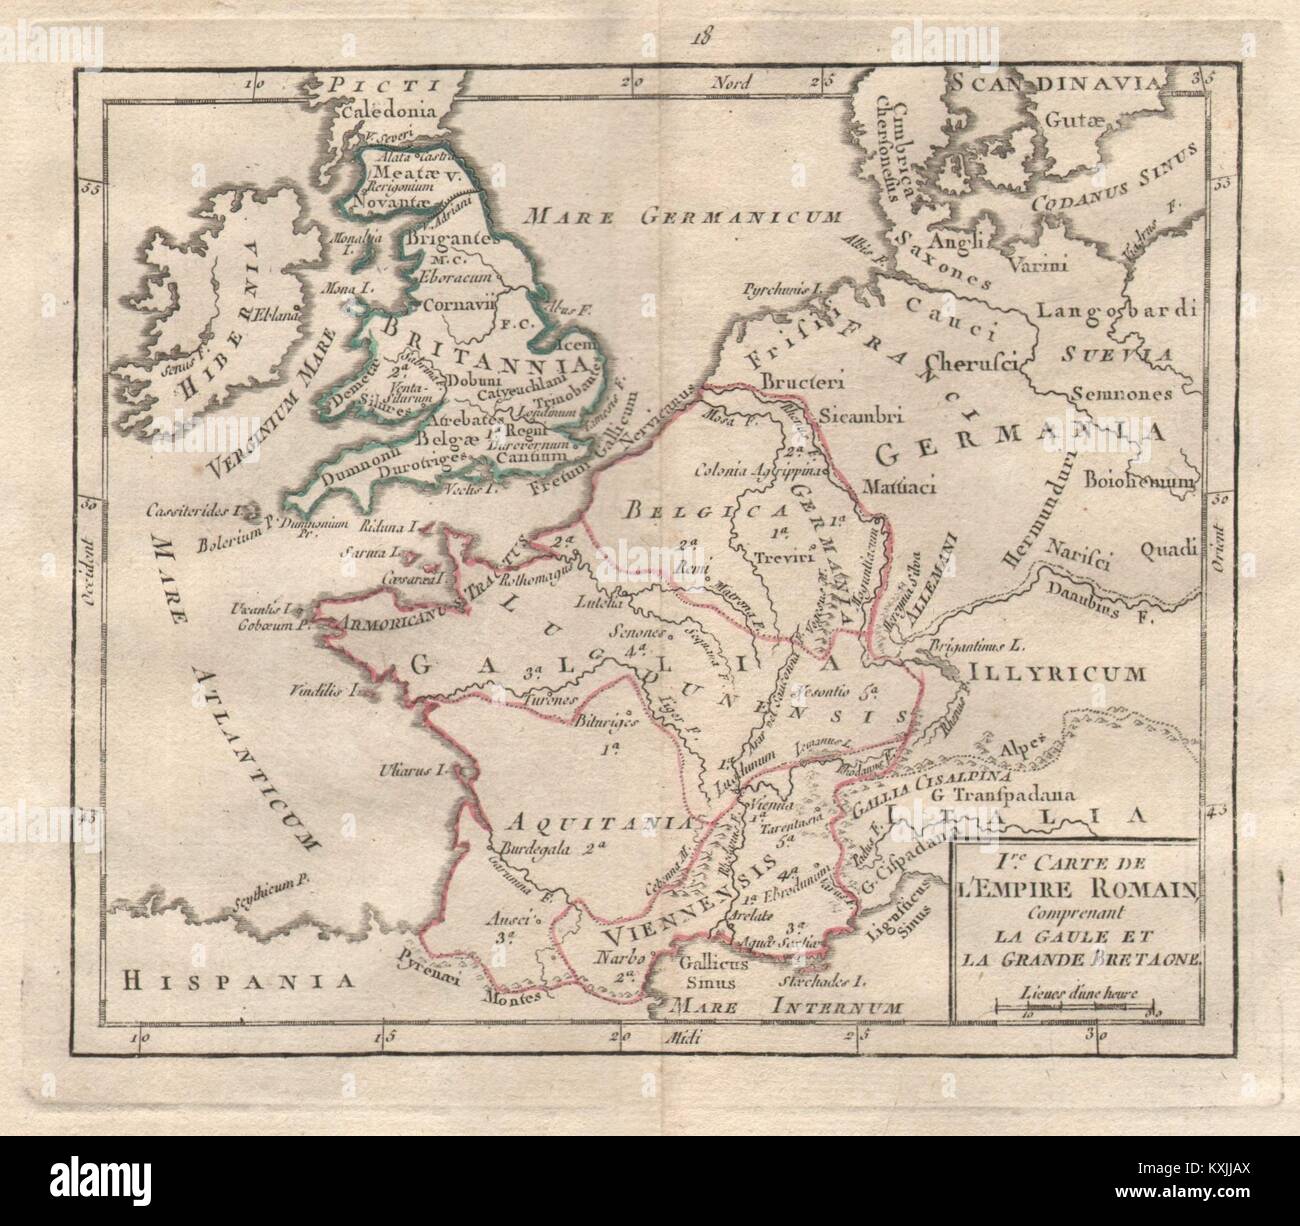 Ire Carte de l'Empire Romain". BRION DE LA TOUR. Roman Britain France 1777  map Stock Photo - Alamy